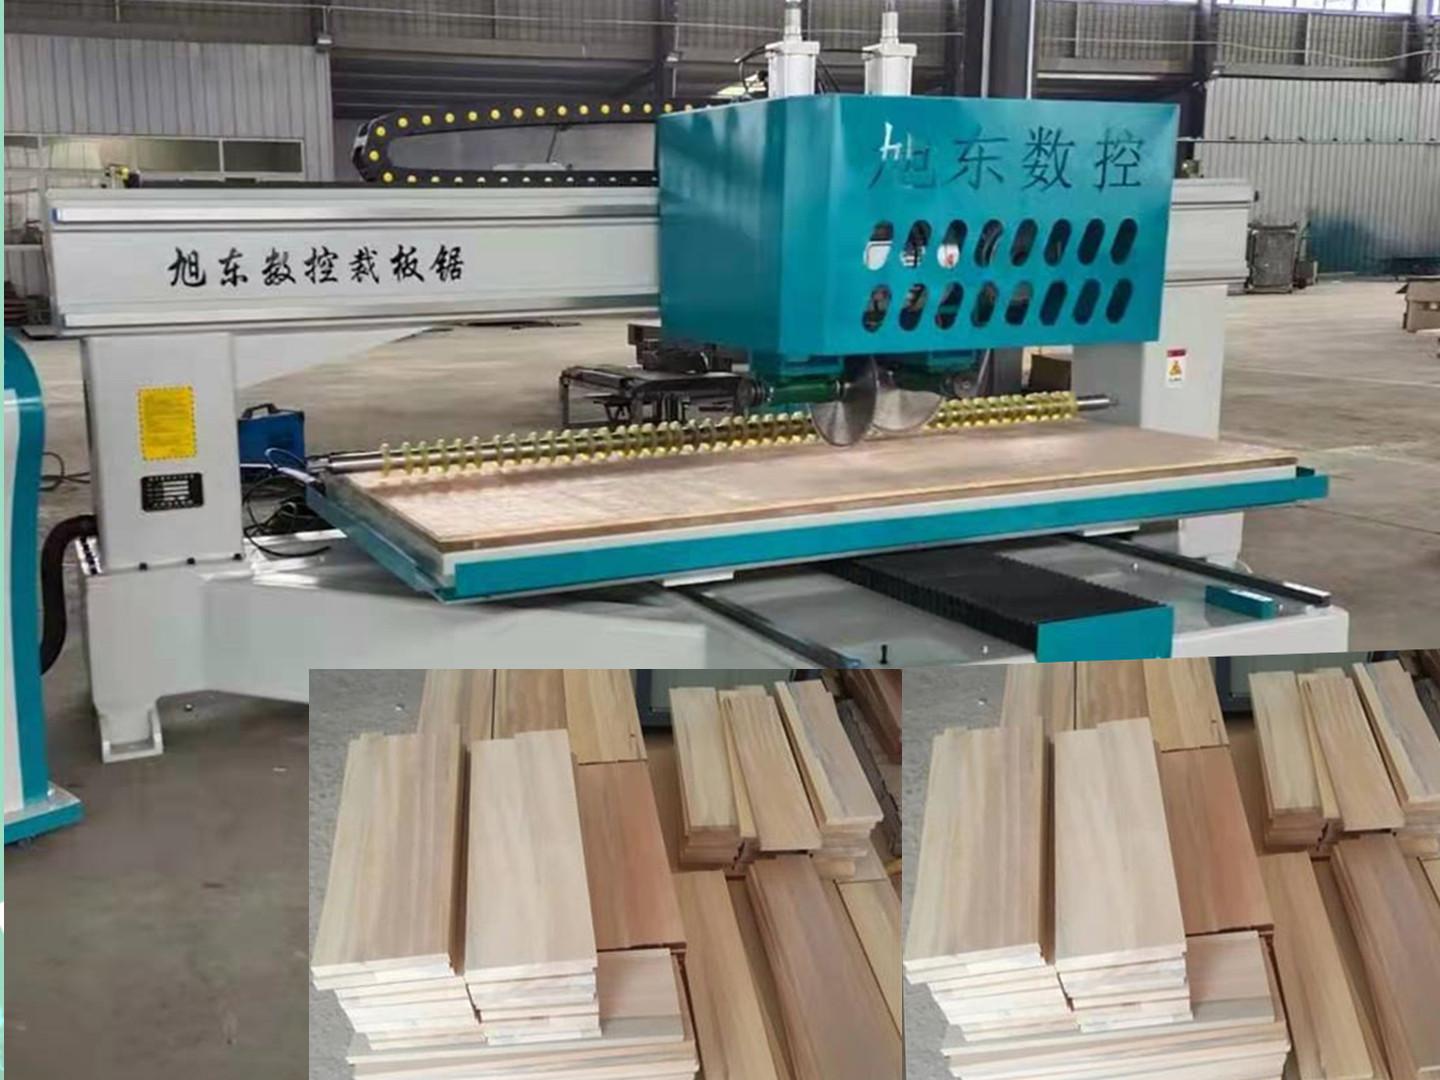 数控裁板锯的主要结构是由滑动台,数控裁板锯工作台面,数控裁板锯横档